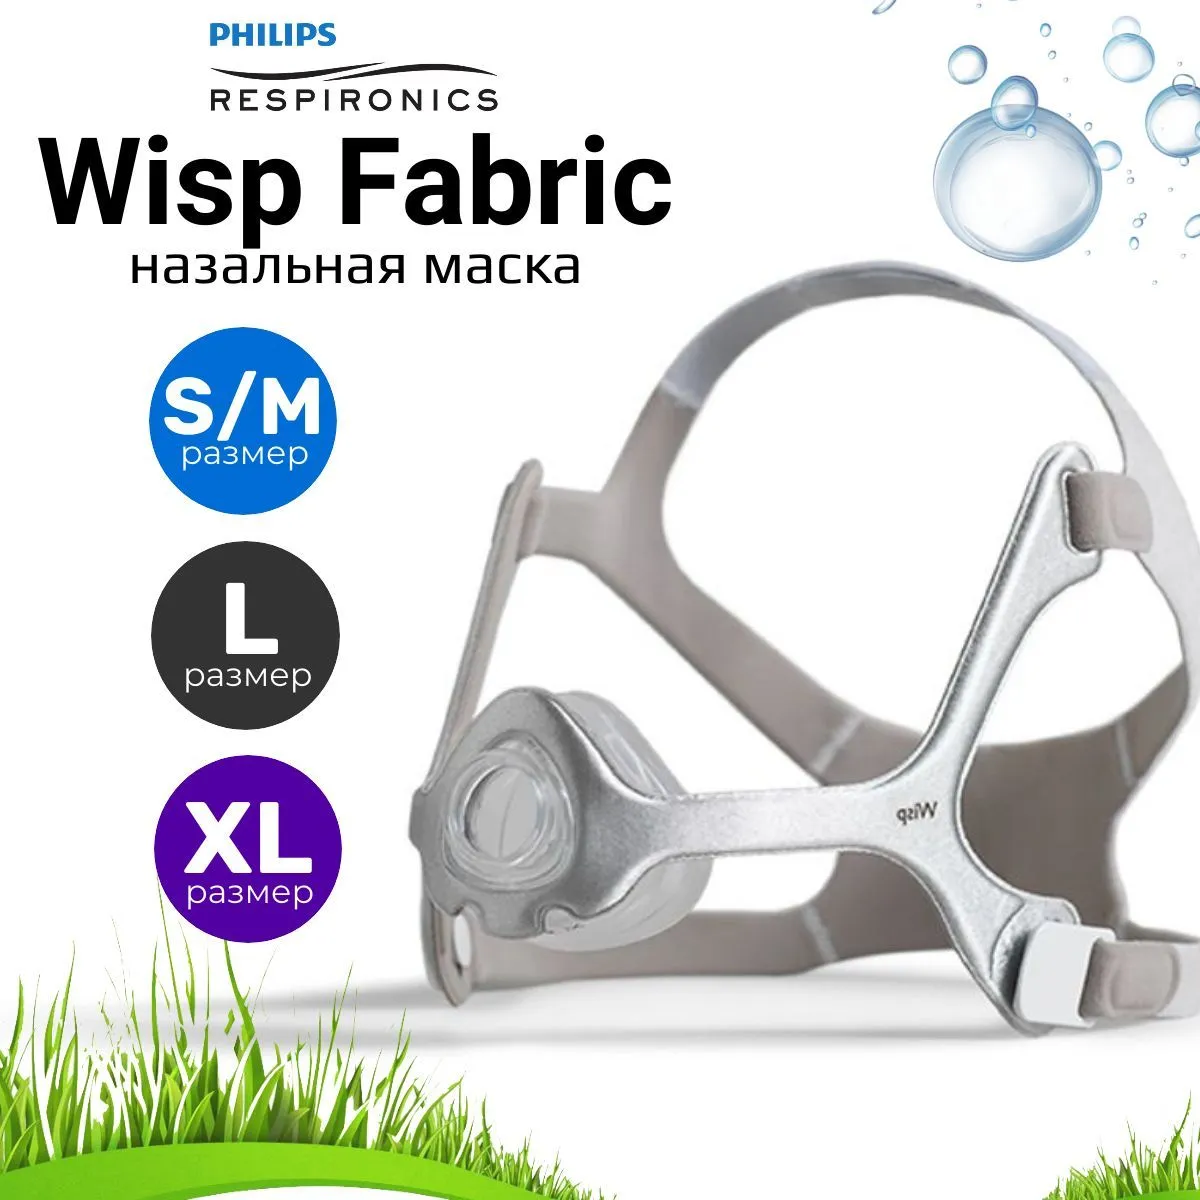 Philips Wisp Fabric (в комплекте 3 размера) маска назальная для СИПАП